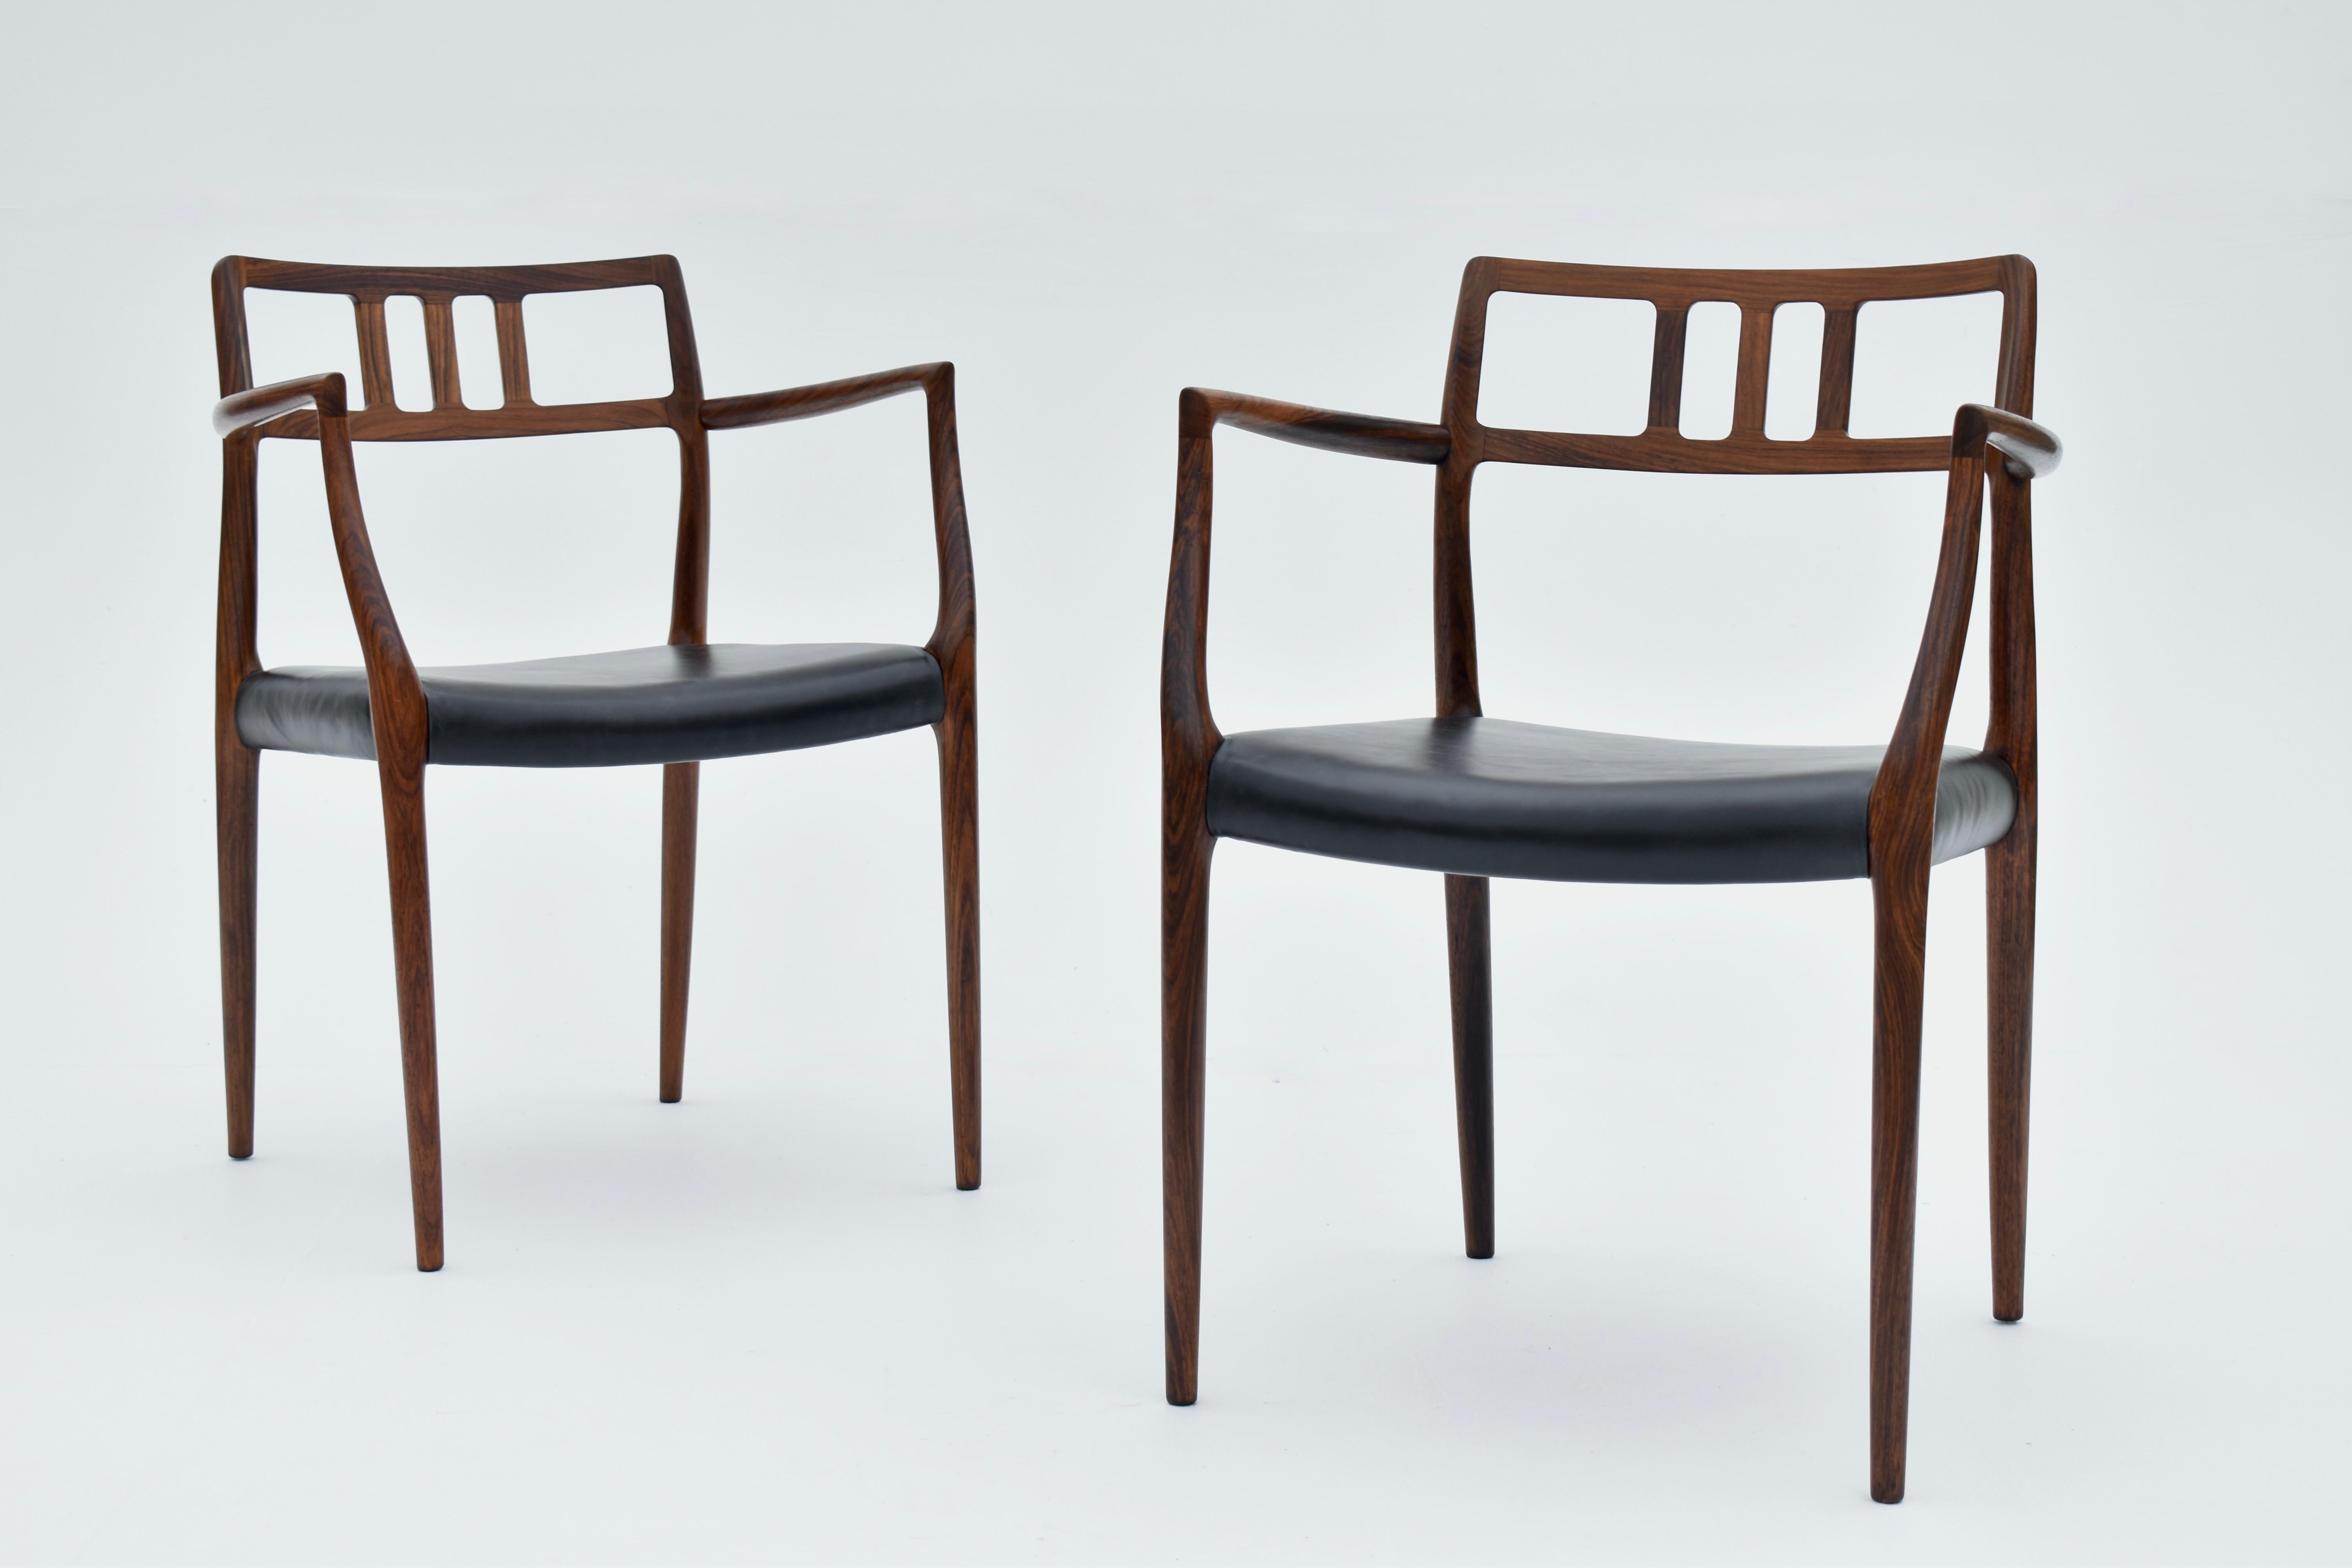 Fauteuil en palissandre massif et cuir noir conçu par Niels Moller en 1966 pour I.L Mollers Mobelfabrik.

Une chaise très recherchée et rarement vue. Classique du design danois, ce modèle est une vitrine du savoir-faire et de l'attention minutieuse